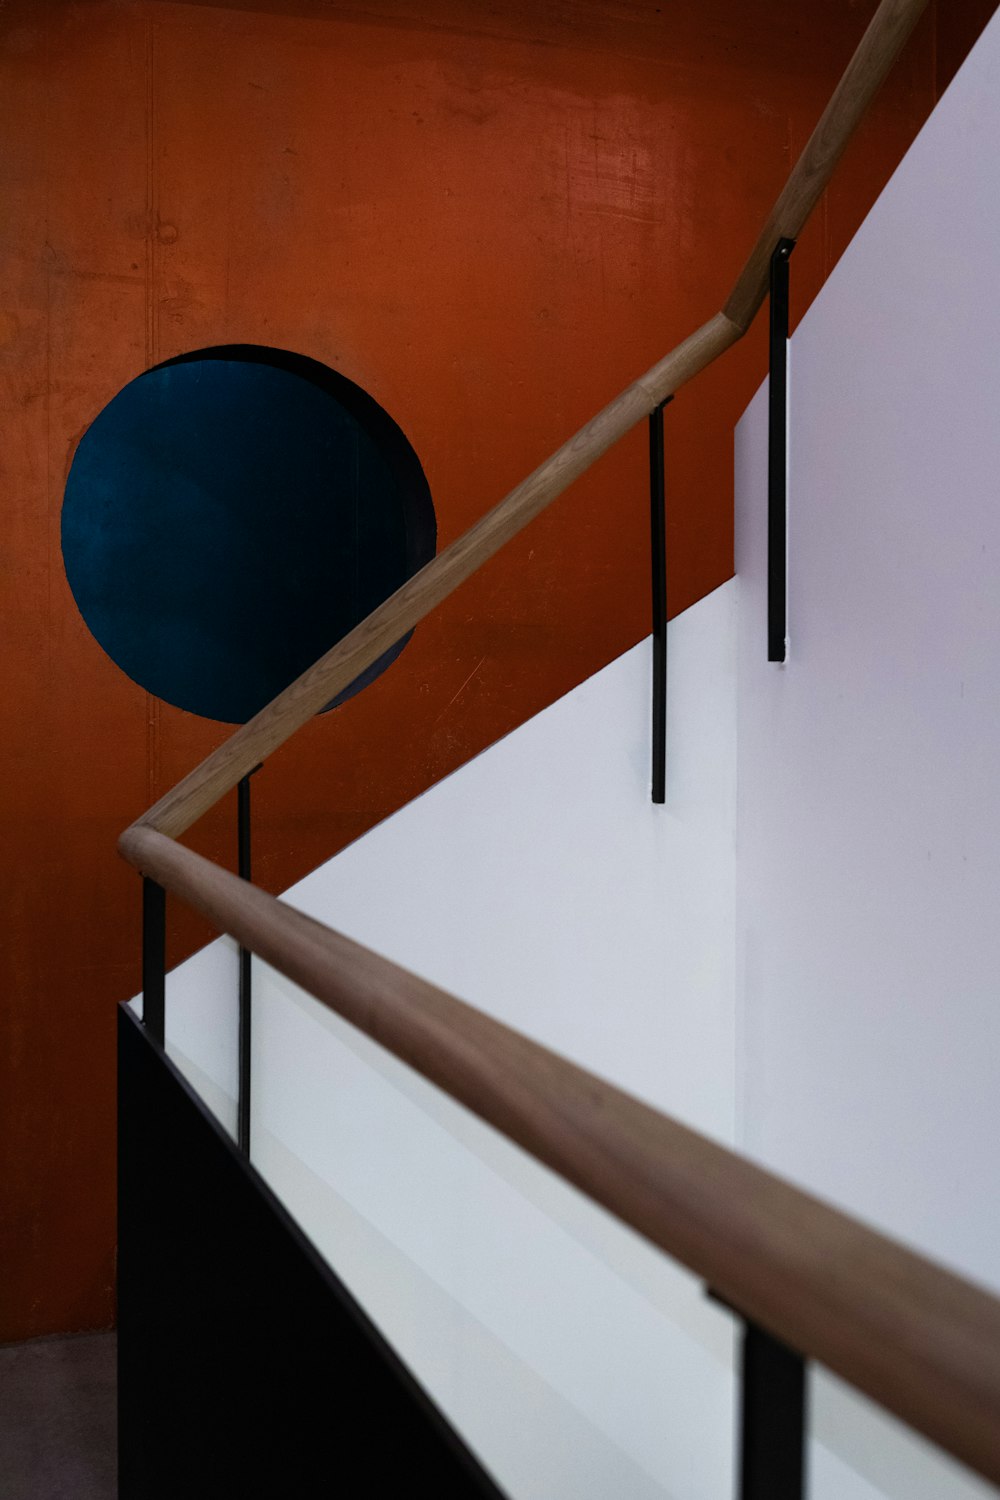 blue round ball on white concrete staircase